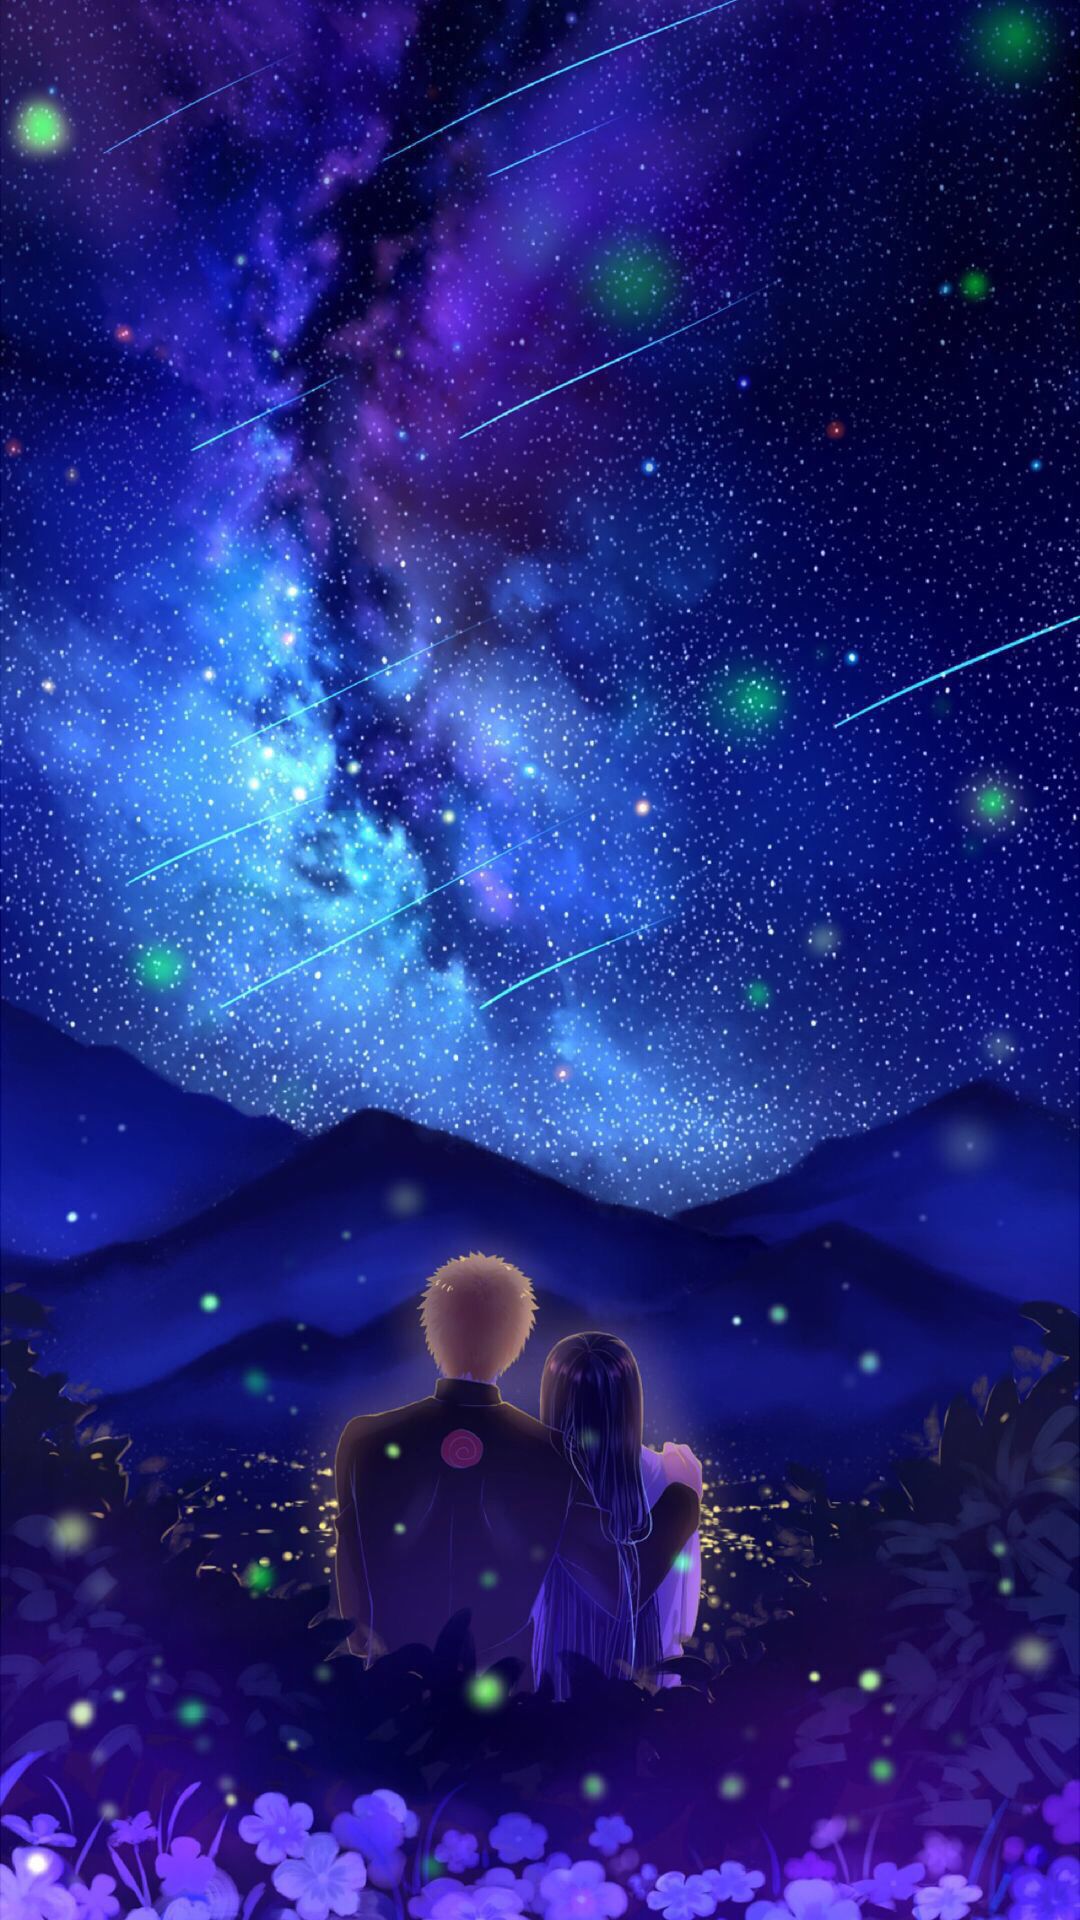 Hãy cùng thưởng thức những đôi sao lung linh trên bầu trời vô tận trong bức ảnh anime galaxy đôi này nhé. Đến với hình ảnh này, bạn sẽ được sự kết hợp tuyệt vời giữa thiên nhiên và nghệ thuật anime tạo nên một khung cảnh tuyệt đẹp đến ngỡ ngàng.